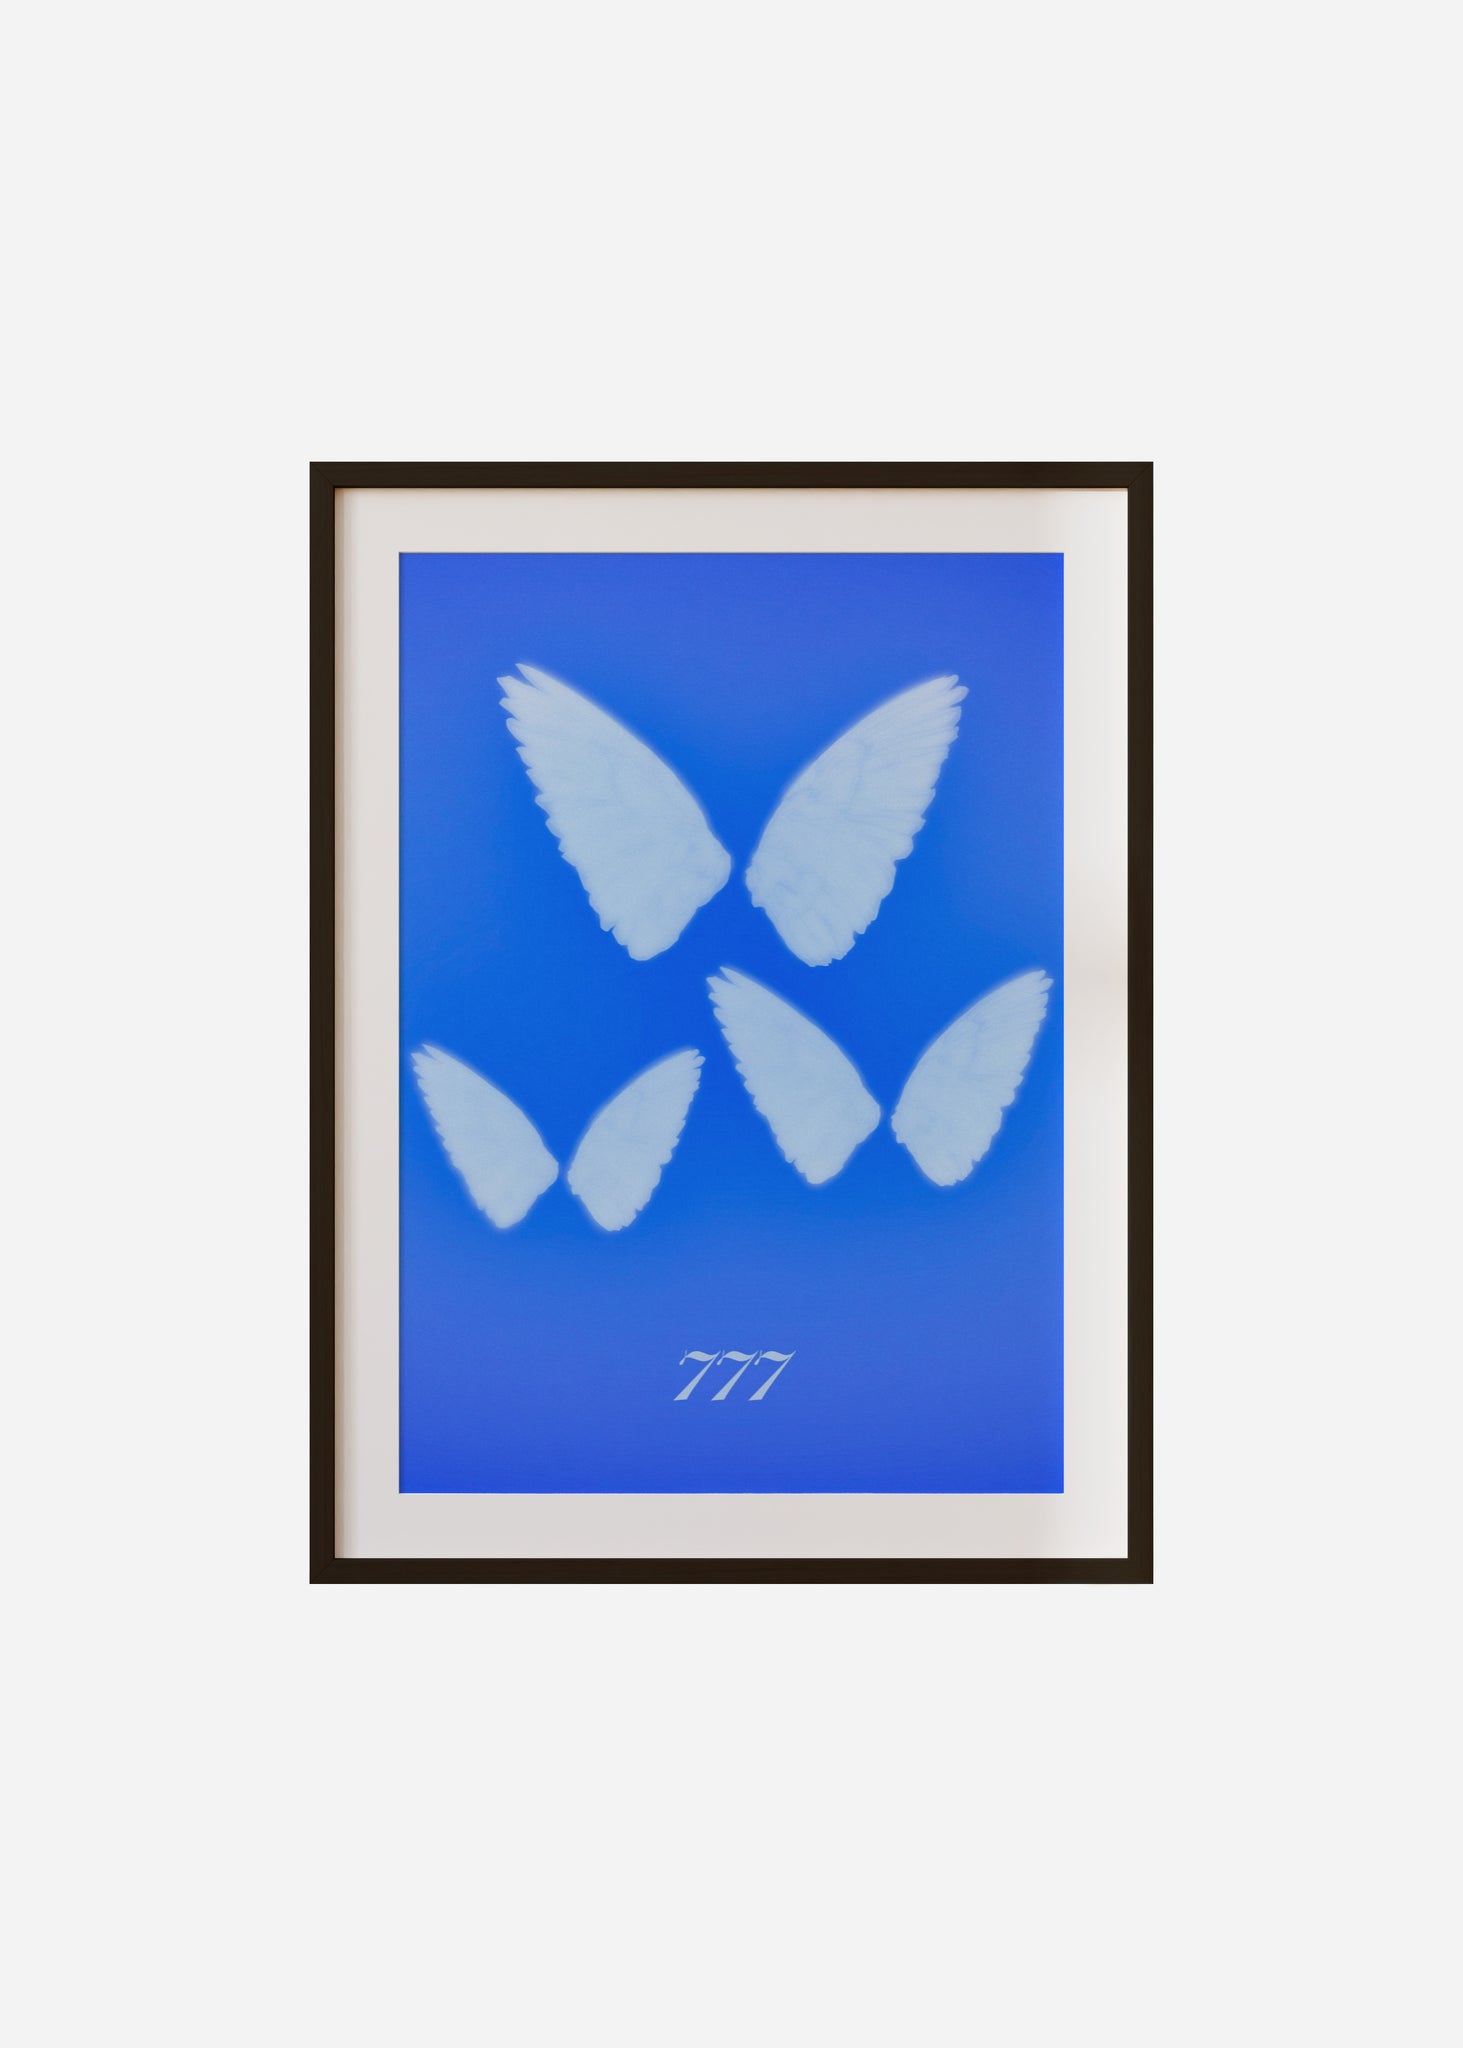 Angel Wings 777 Framed & Mounted Print